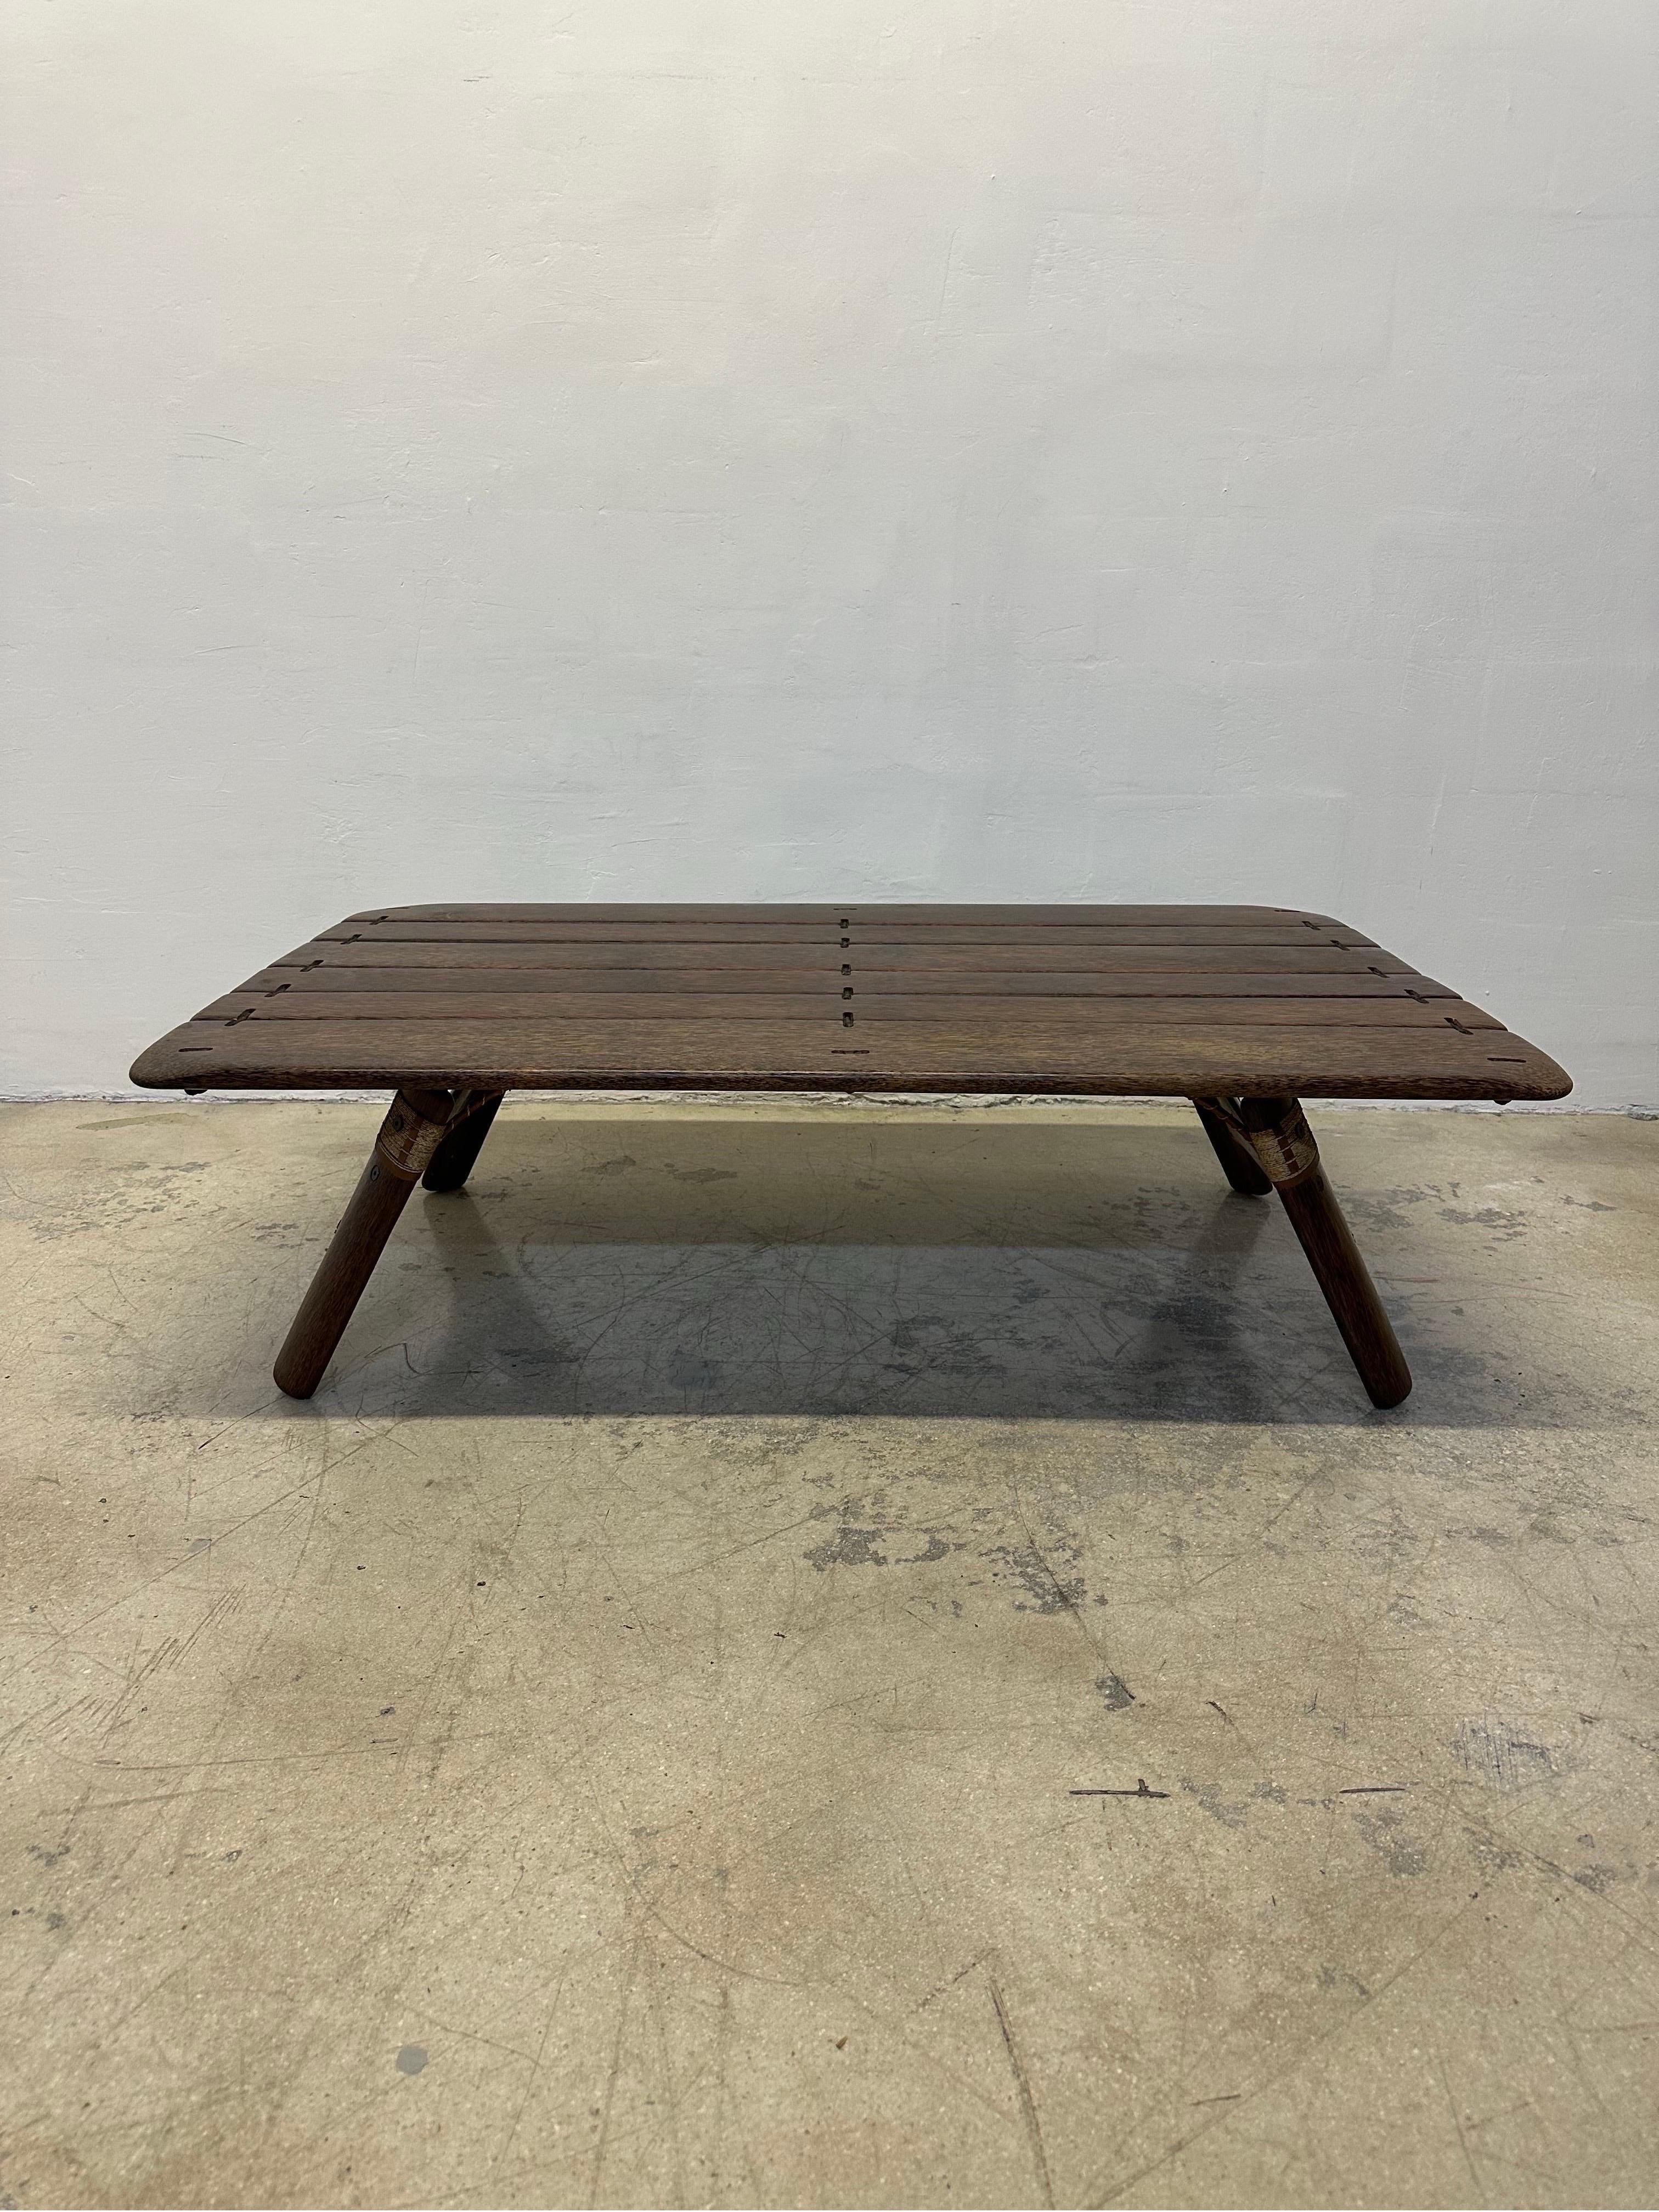 La table basse Navajo de Pacific Green est fabriquée à partir de bois dur de palmier, de jute, de fer et de cuir. Vers les années 2000.  Pacific Green est un fabricant de meubles durables et un développeur de Palmwood, un bois dur durable fabriqué à